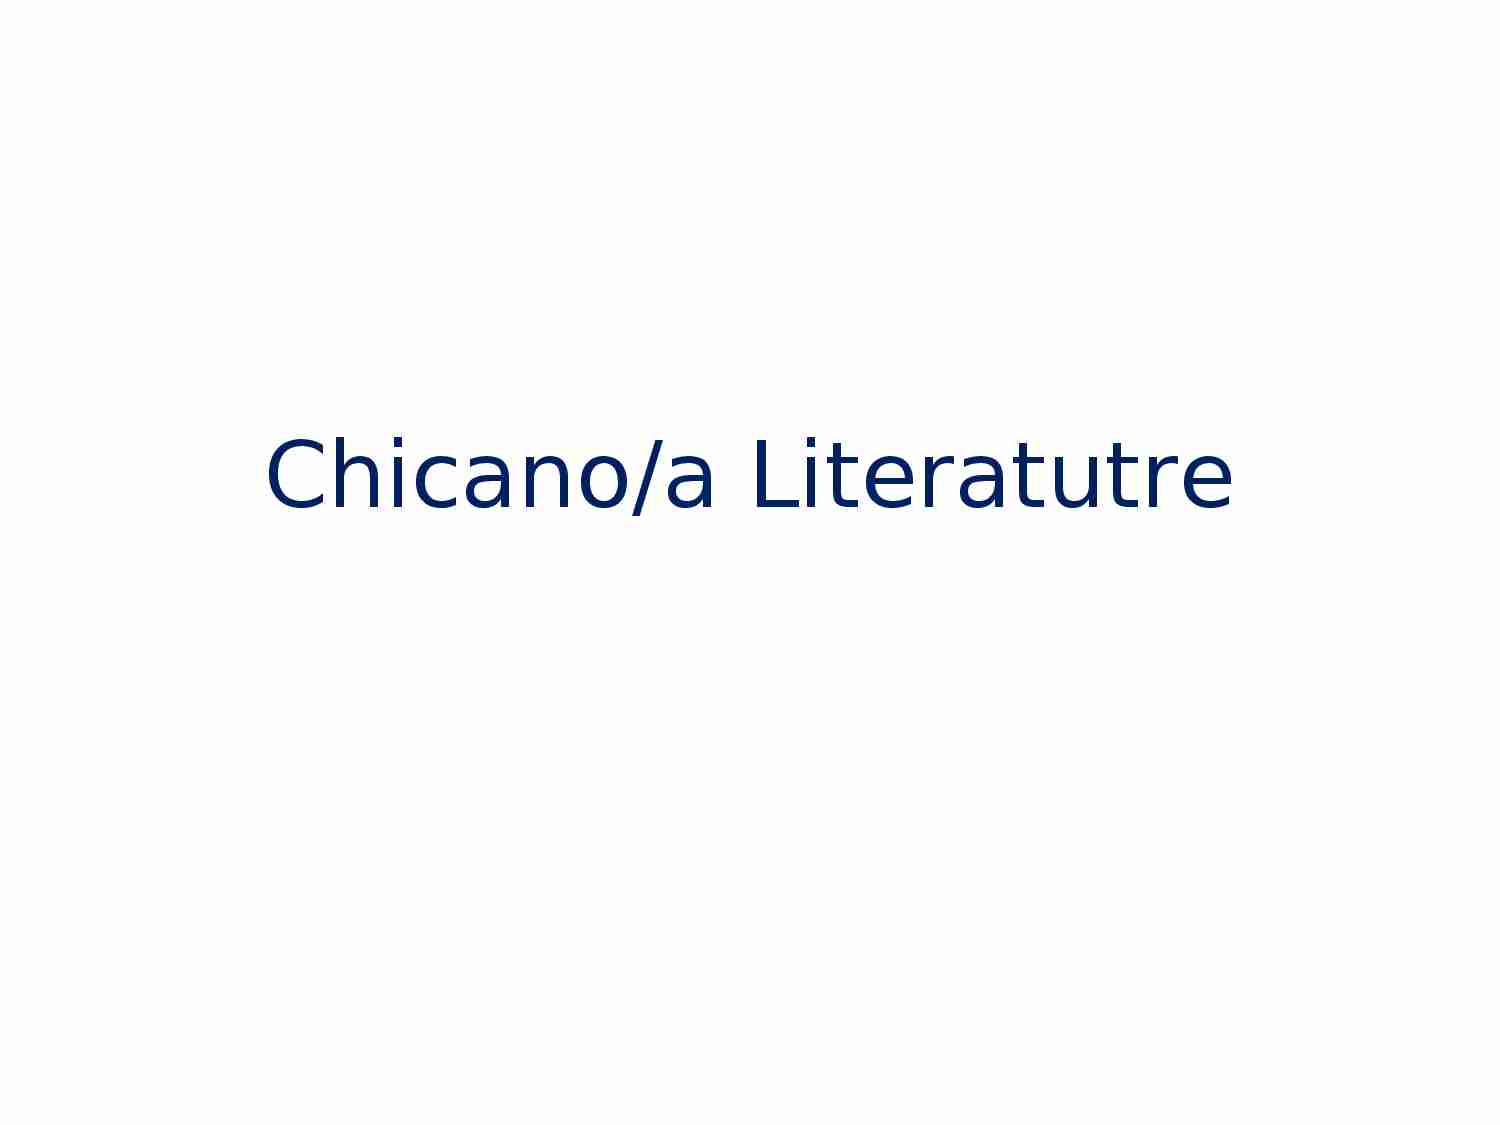 Chicano/a Literatutre - strona 1